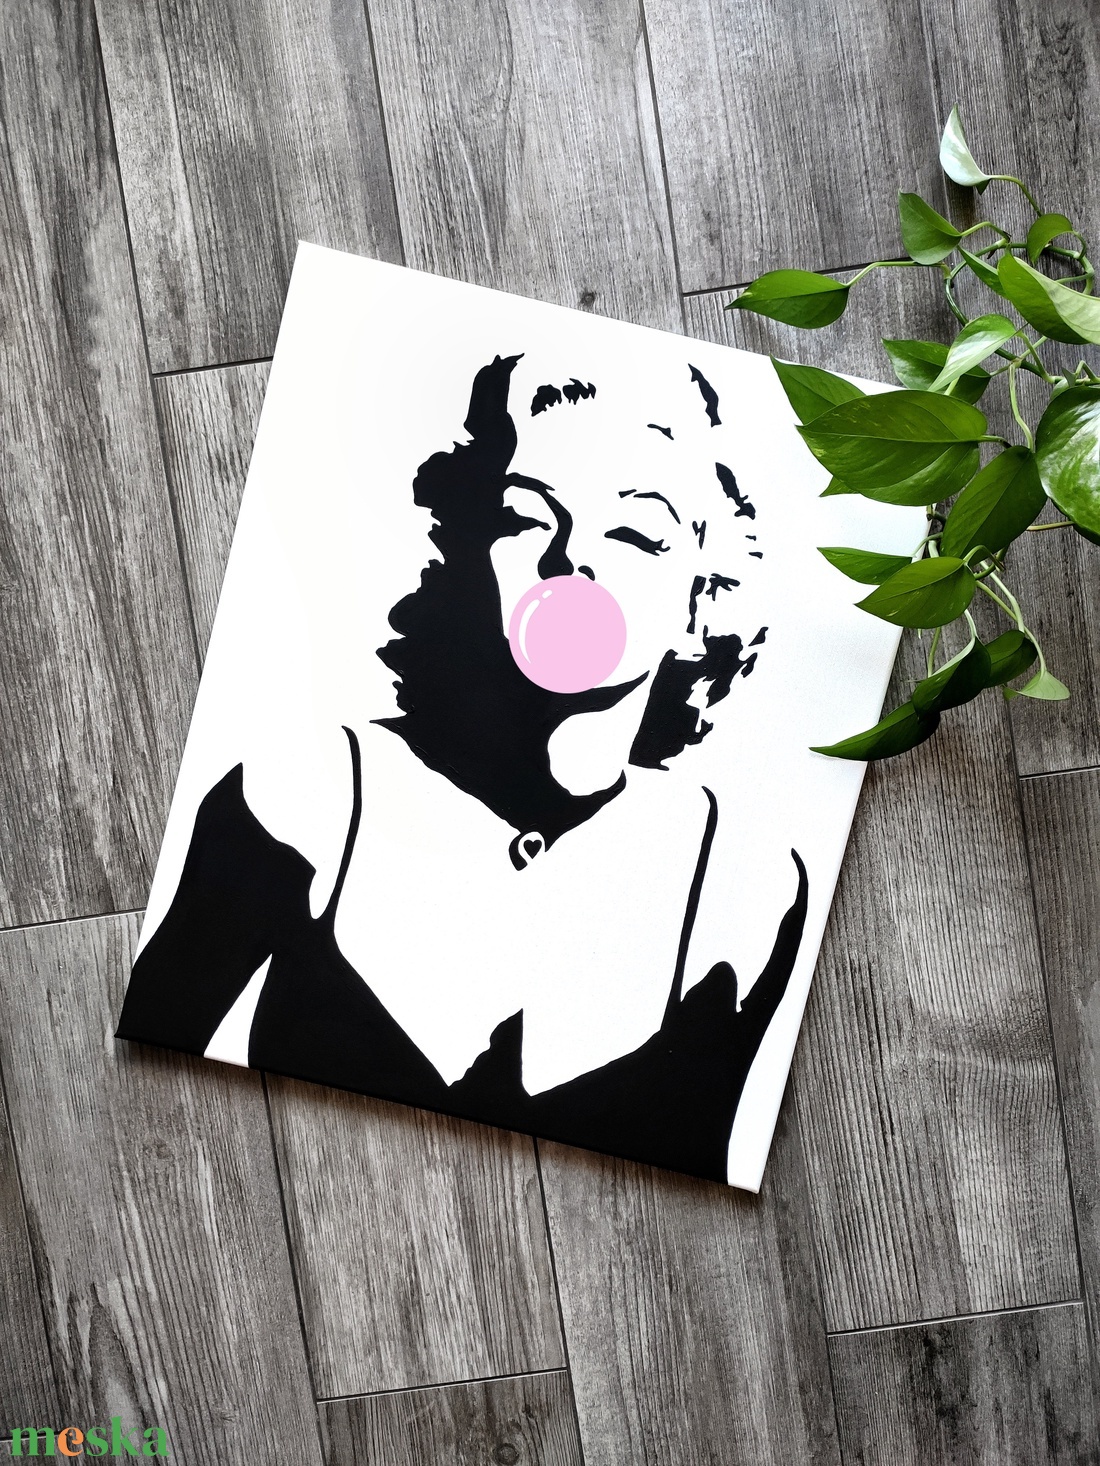 Marilyn Monroe vászonkép - otthon & lakás - dekoráció - kép & falikép - vászonkép - Meska.hu